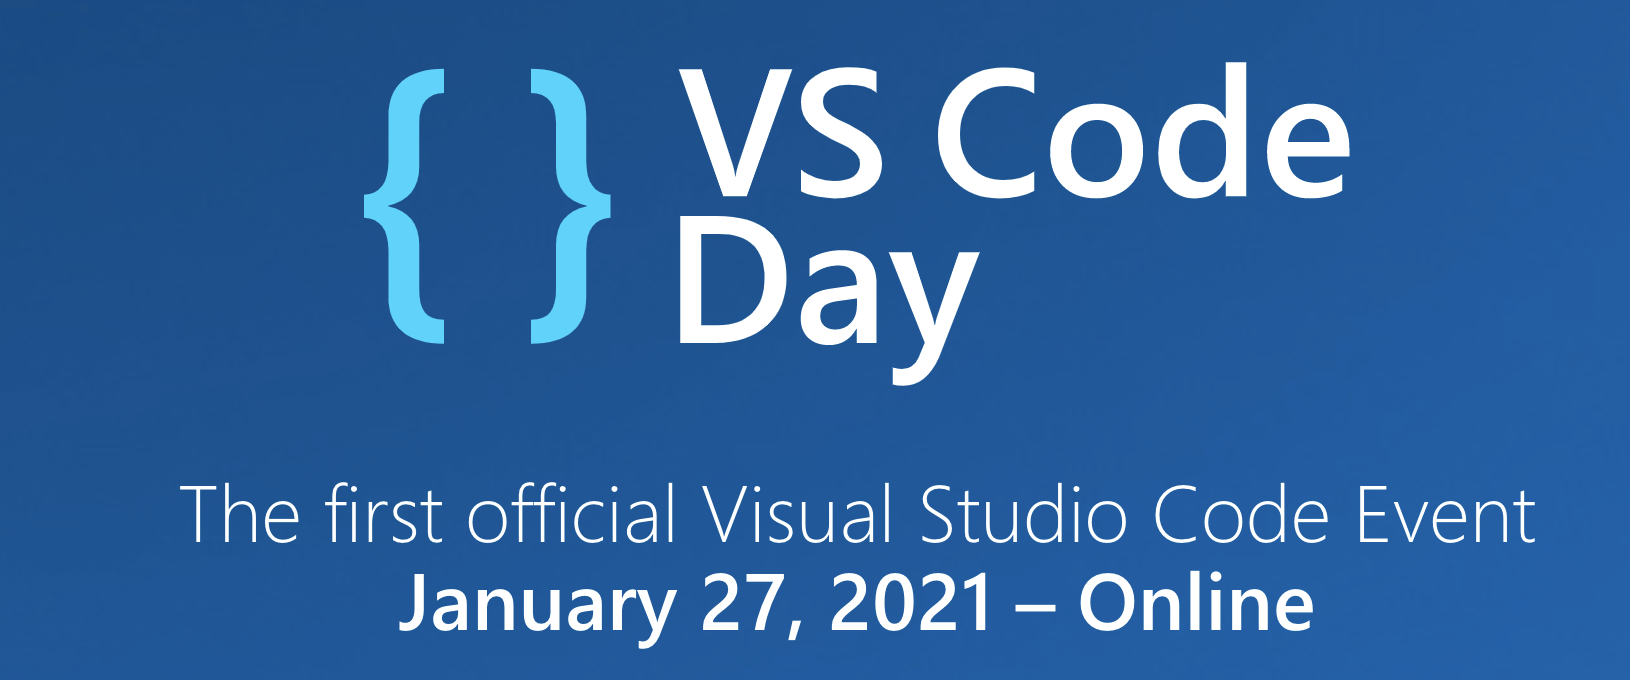 VS Code Day 2021